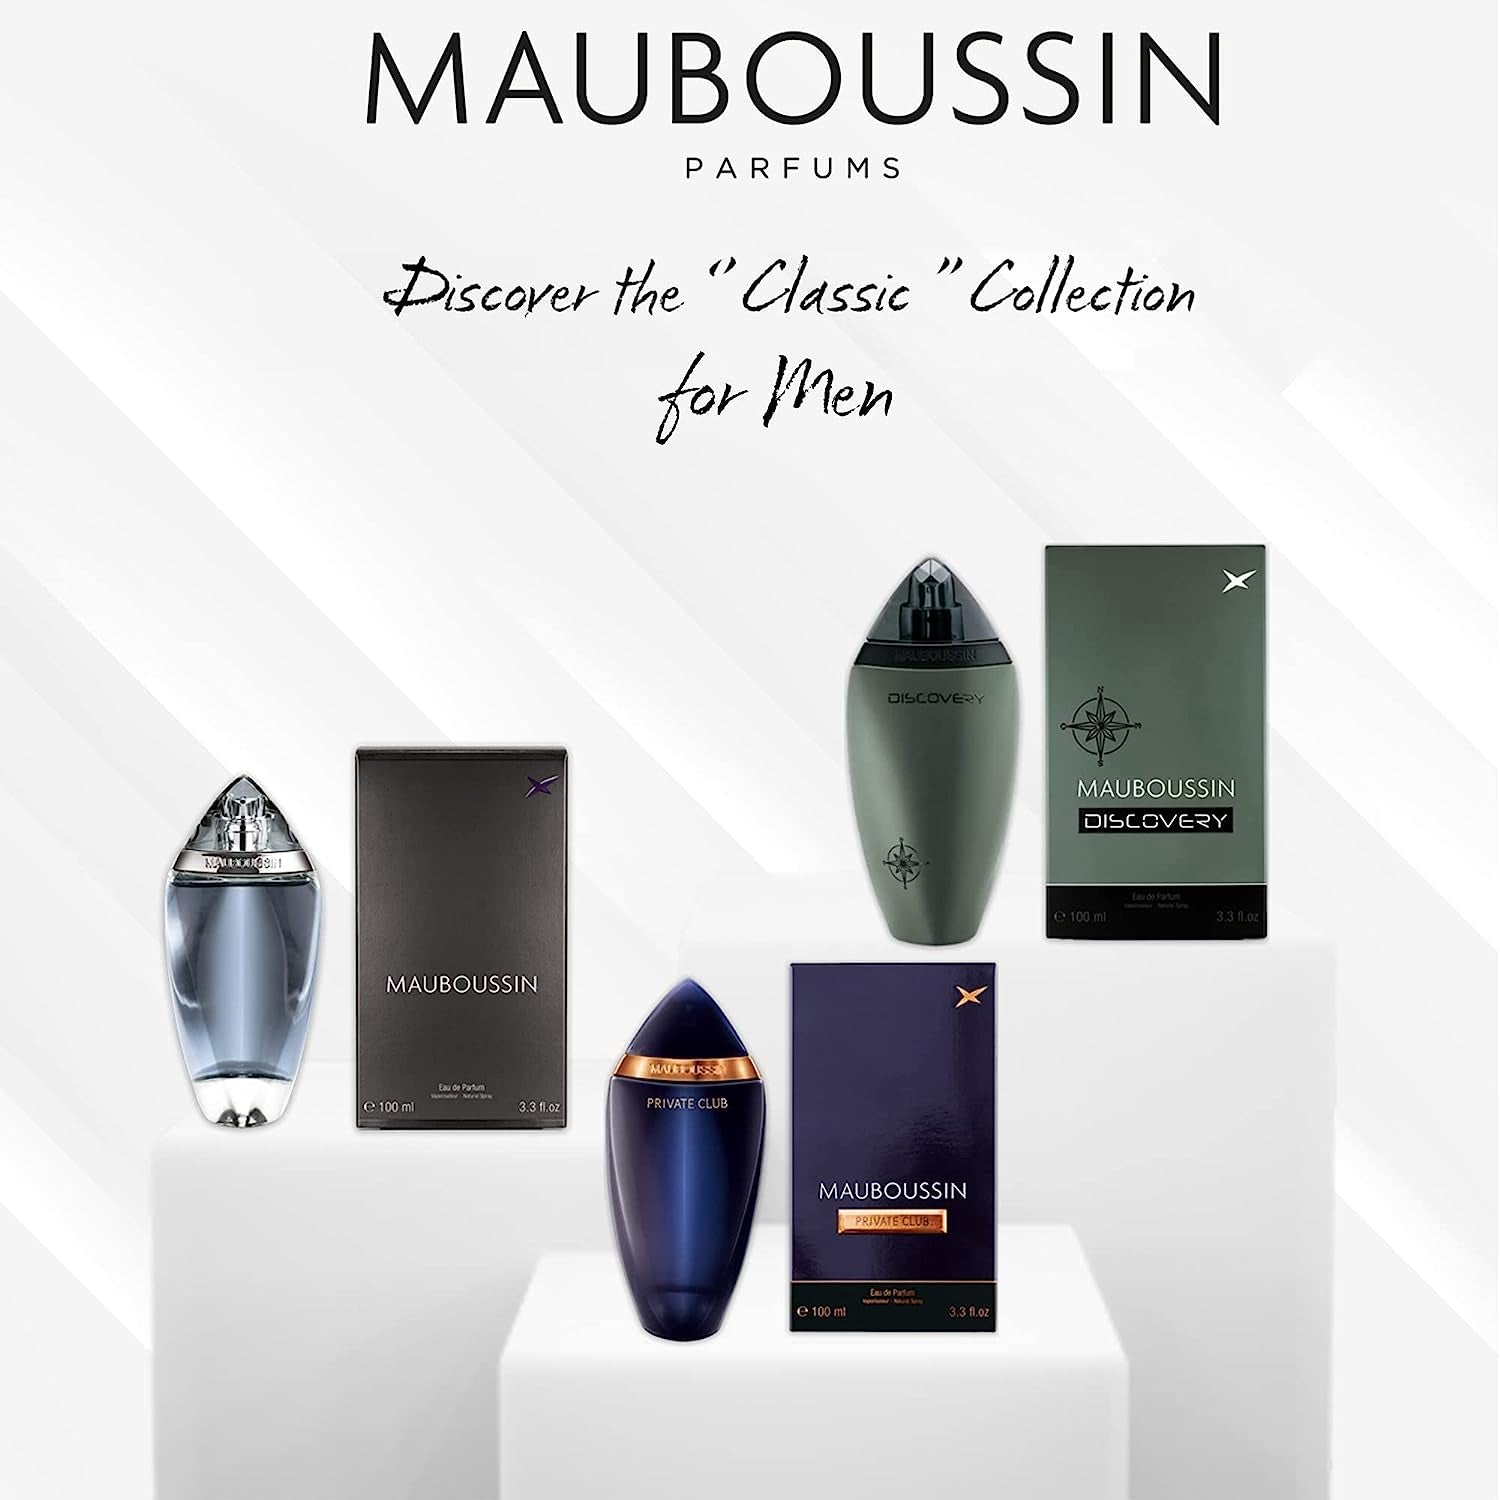 Mauboussin - Original Homme 100ml (3.3 Fl Oz) - Eau de Parfum for Men - Woody & Aromatic Scents